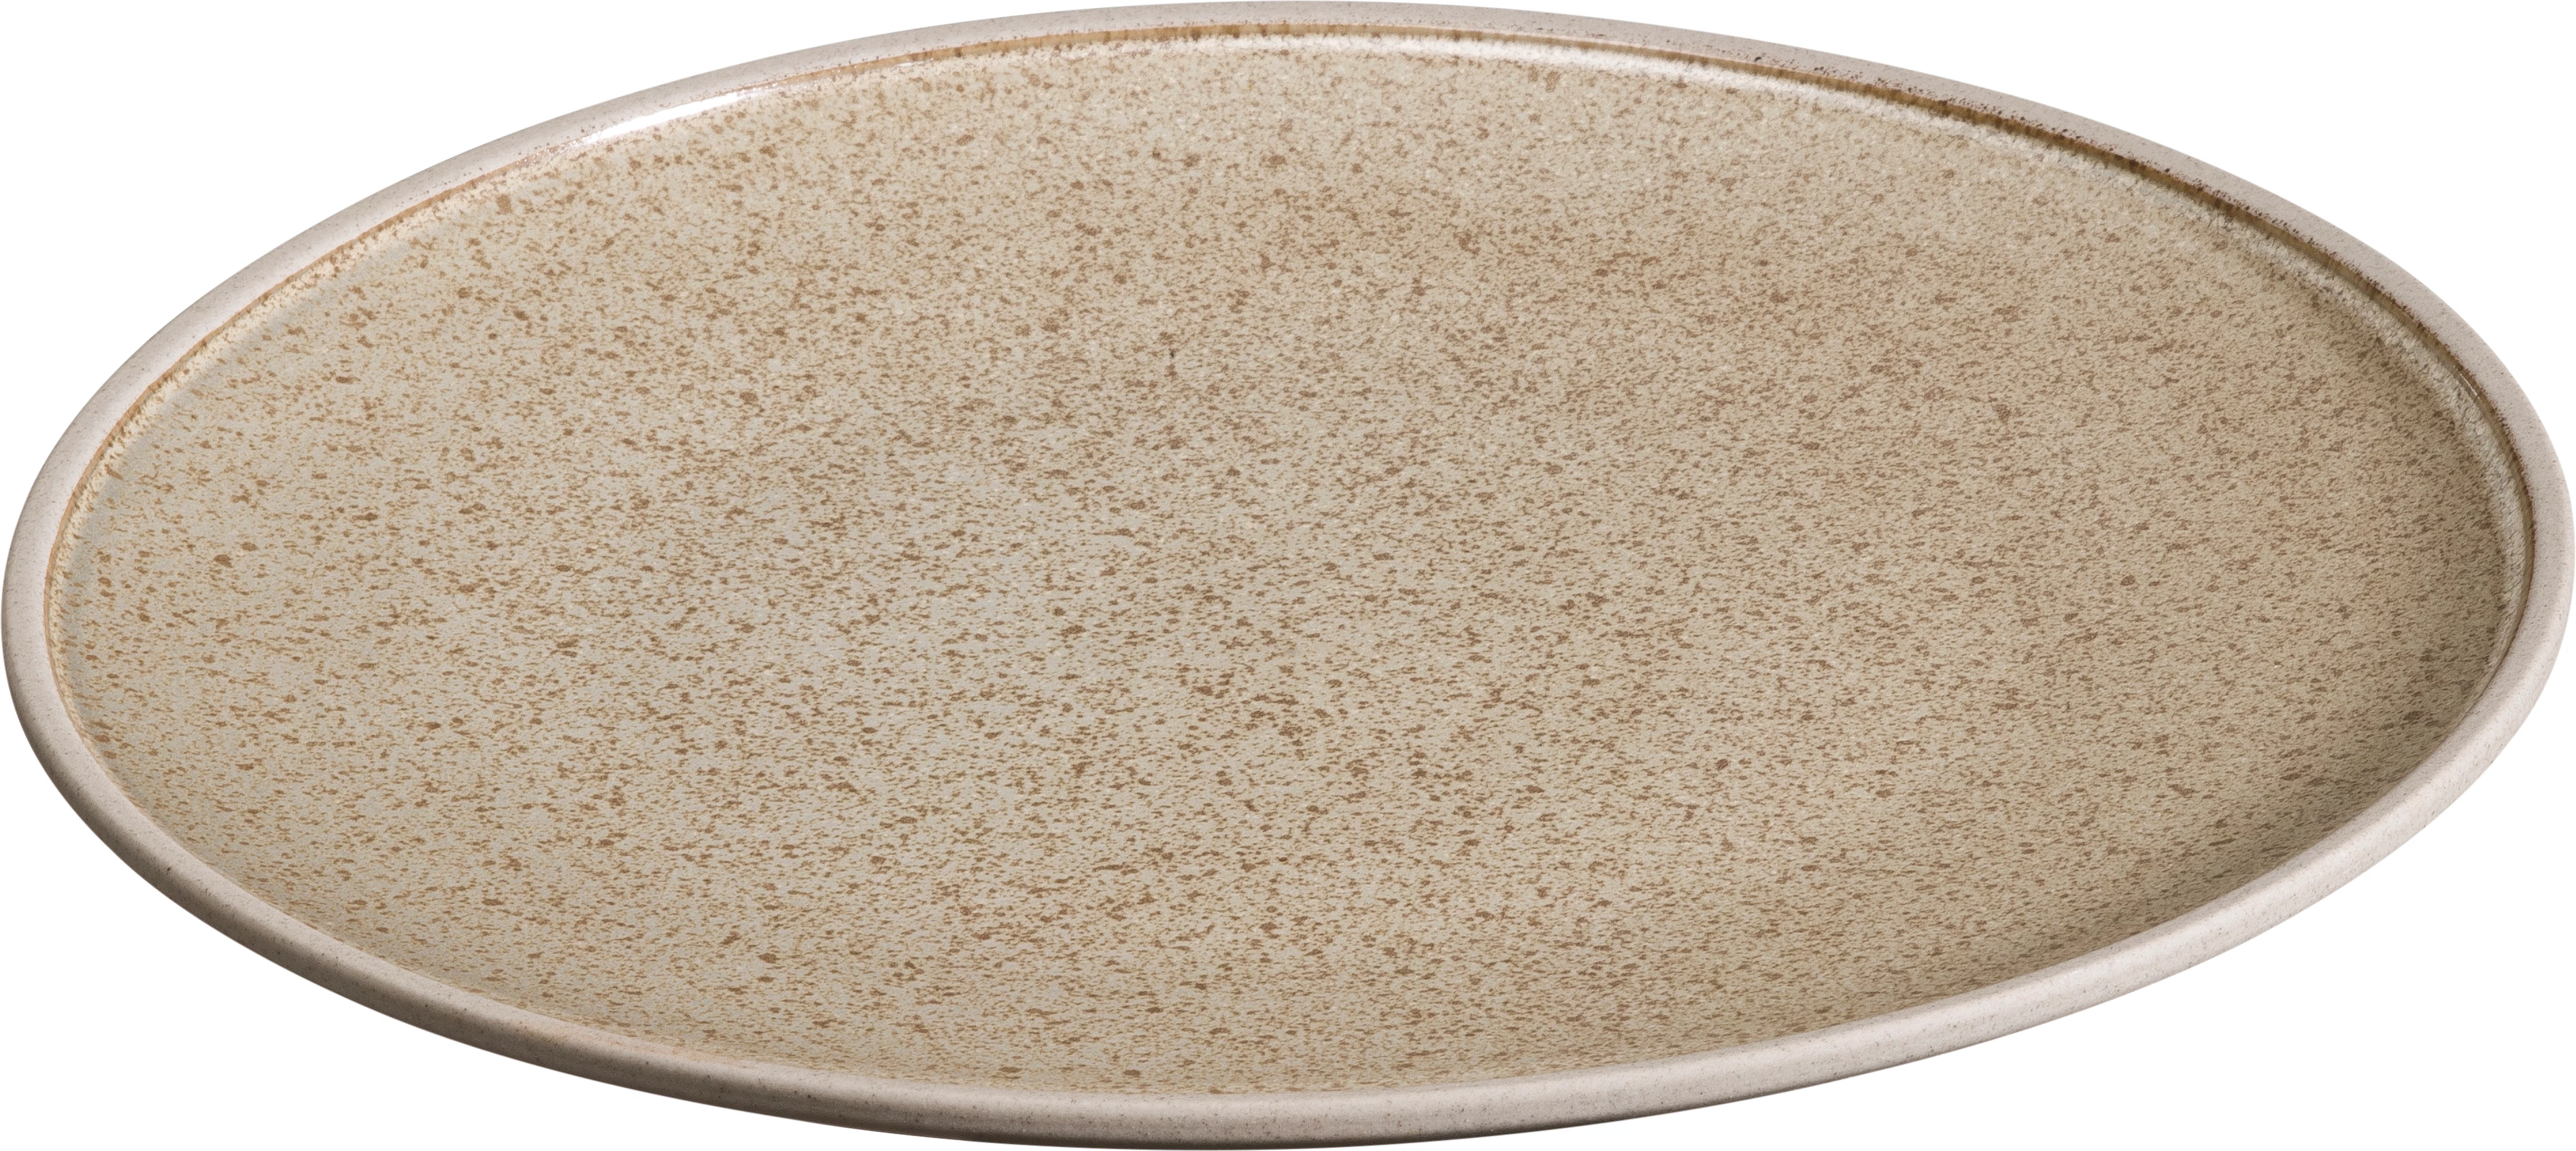 Sorelle flad tallerken uden fane, sand, ø26 cm